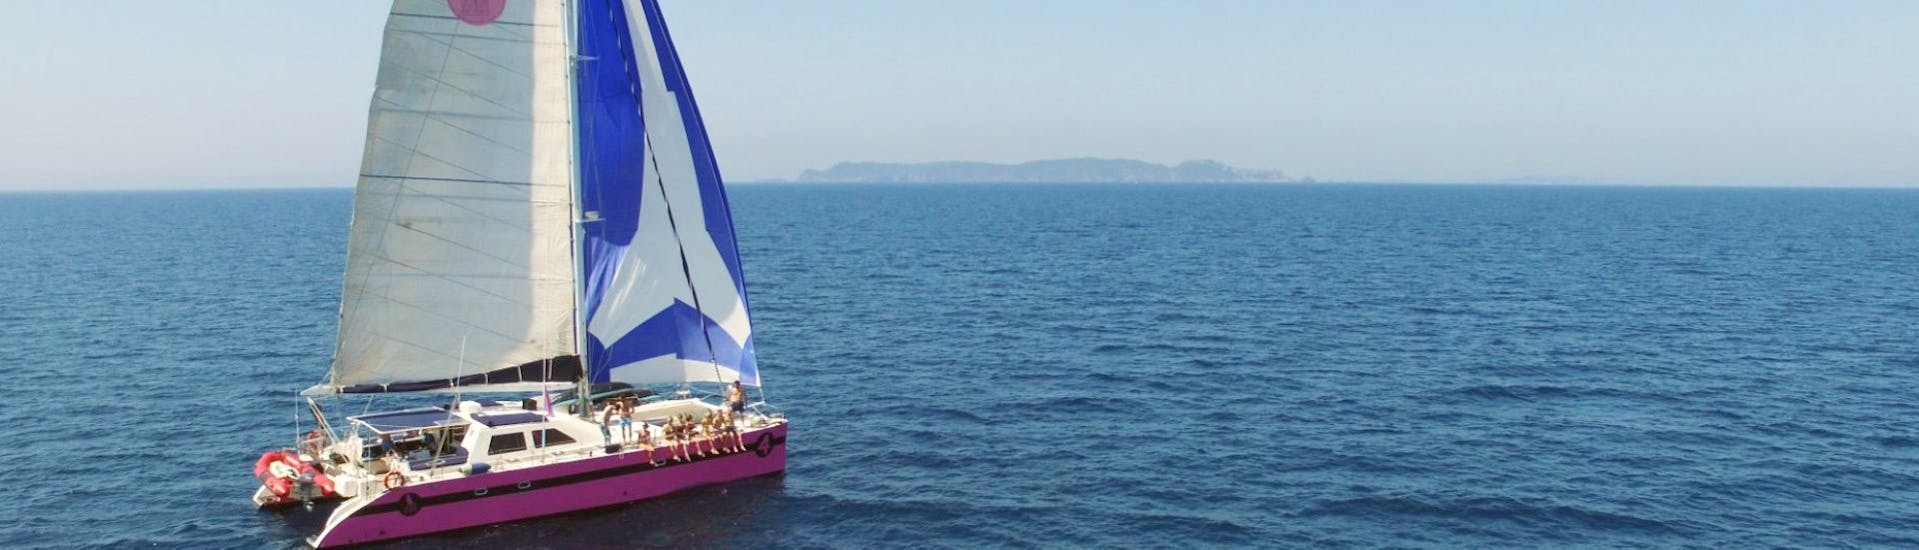 Vista durante la gita in barca nel Golfo di Morbihan con Caseneuve Maxi Catamarano.